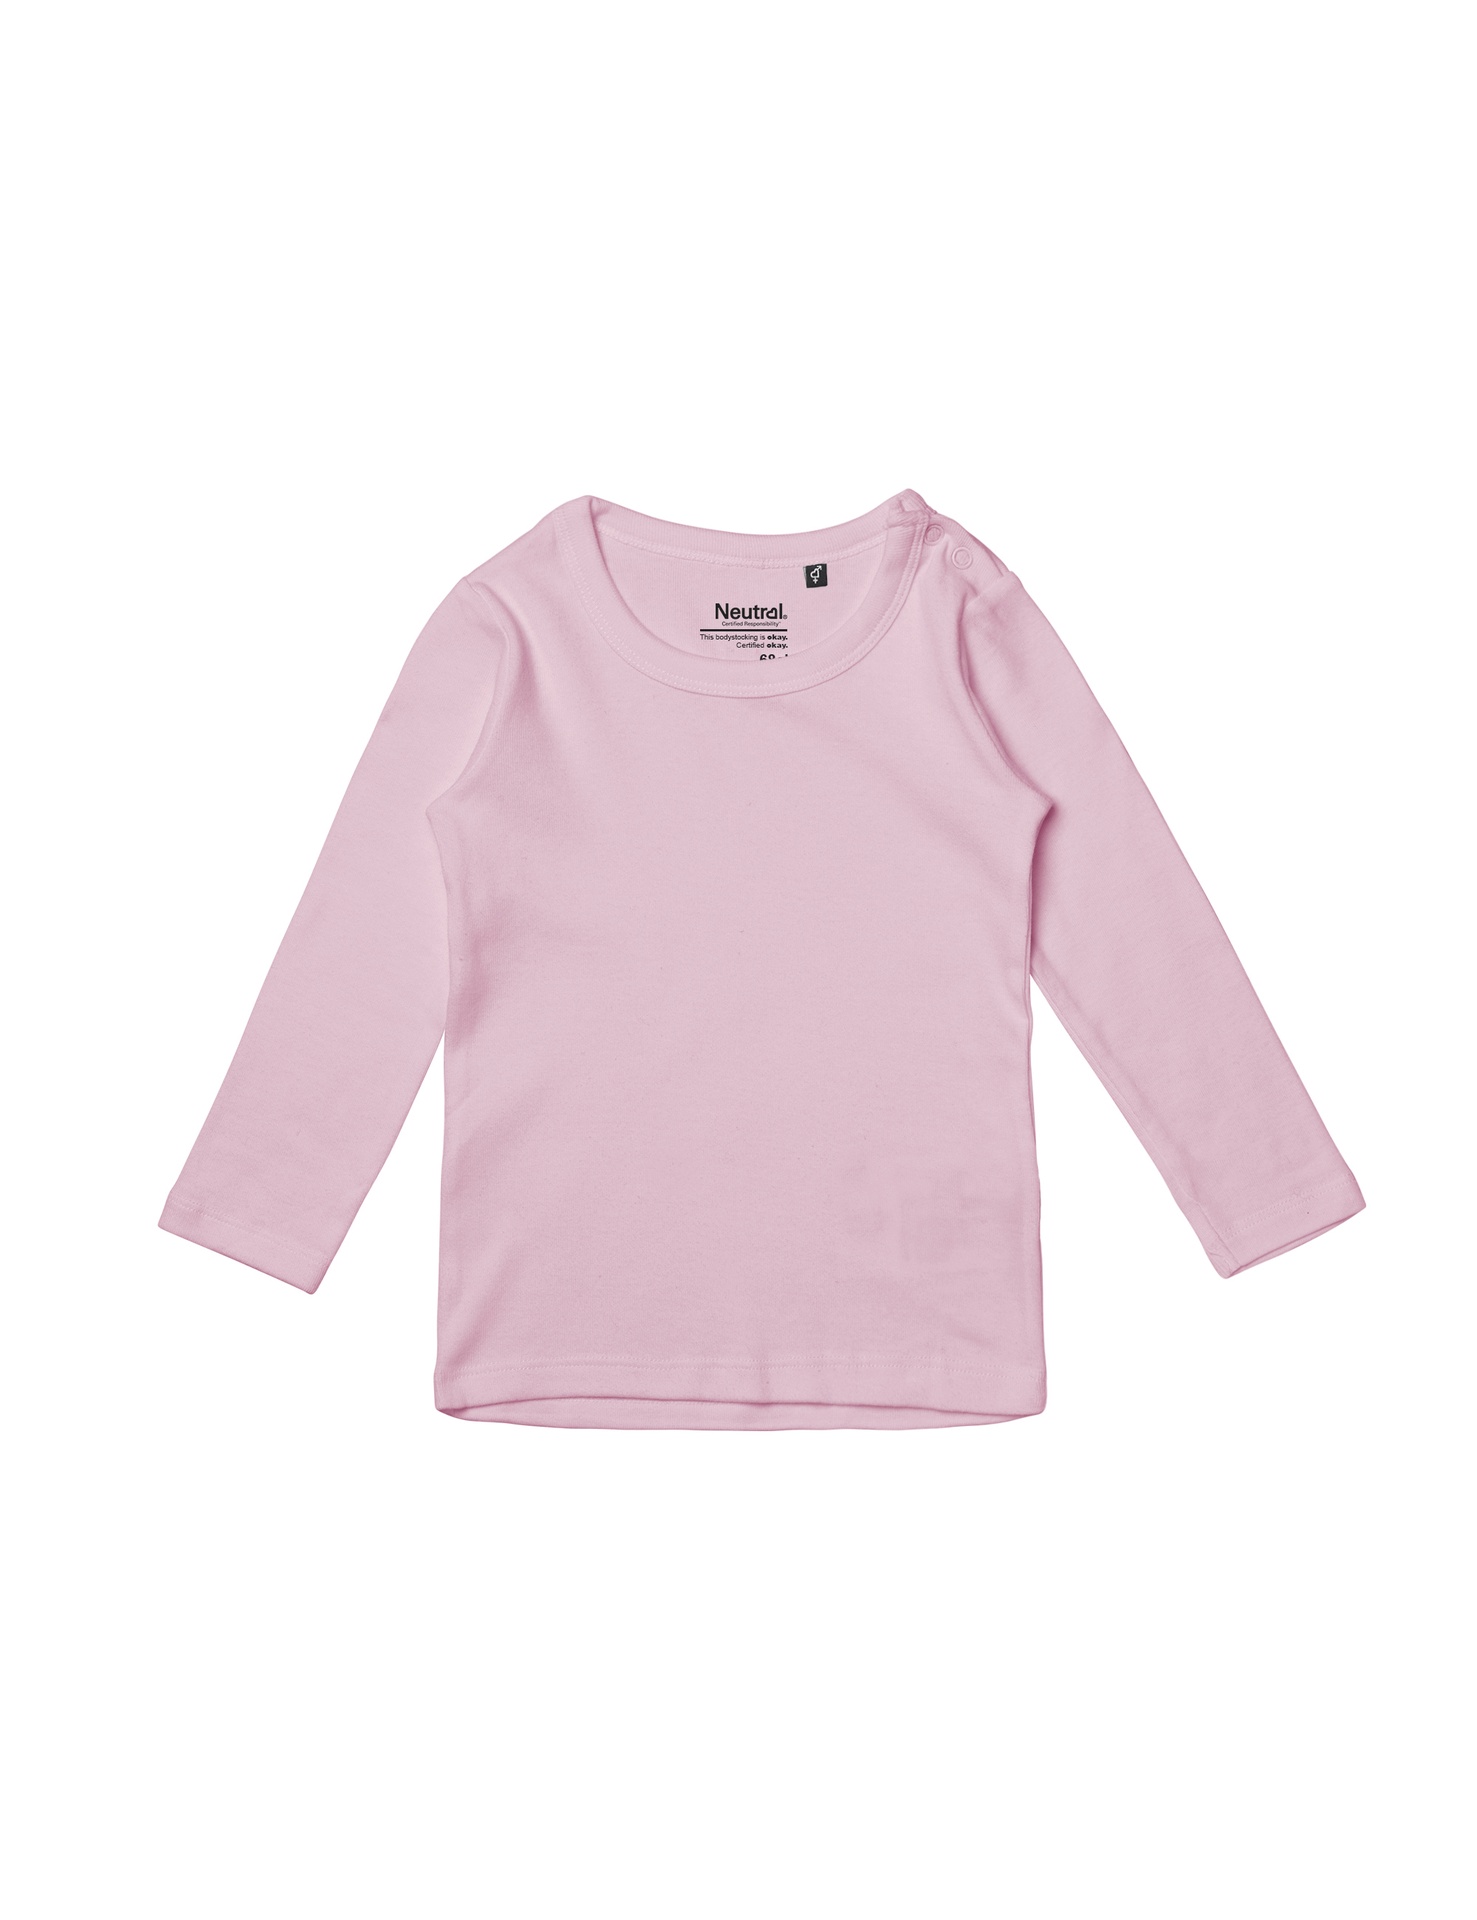 [PR/05626] Babies Long Sleeve T-Shirt (Light Pink 20, 86 cm)